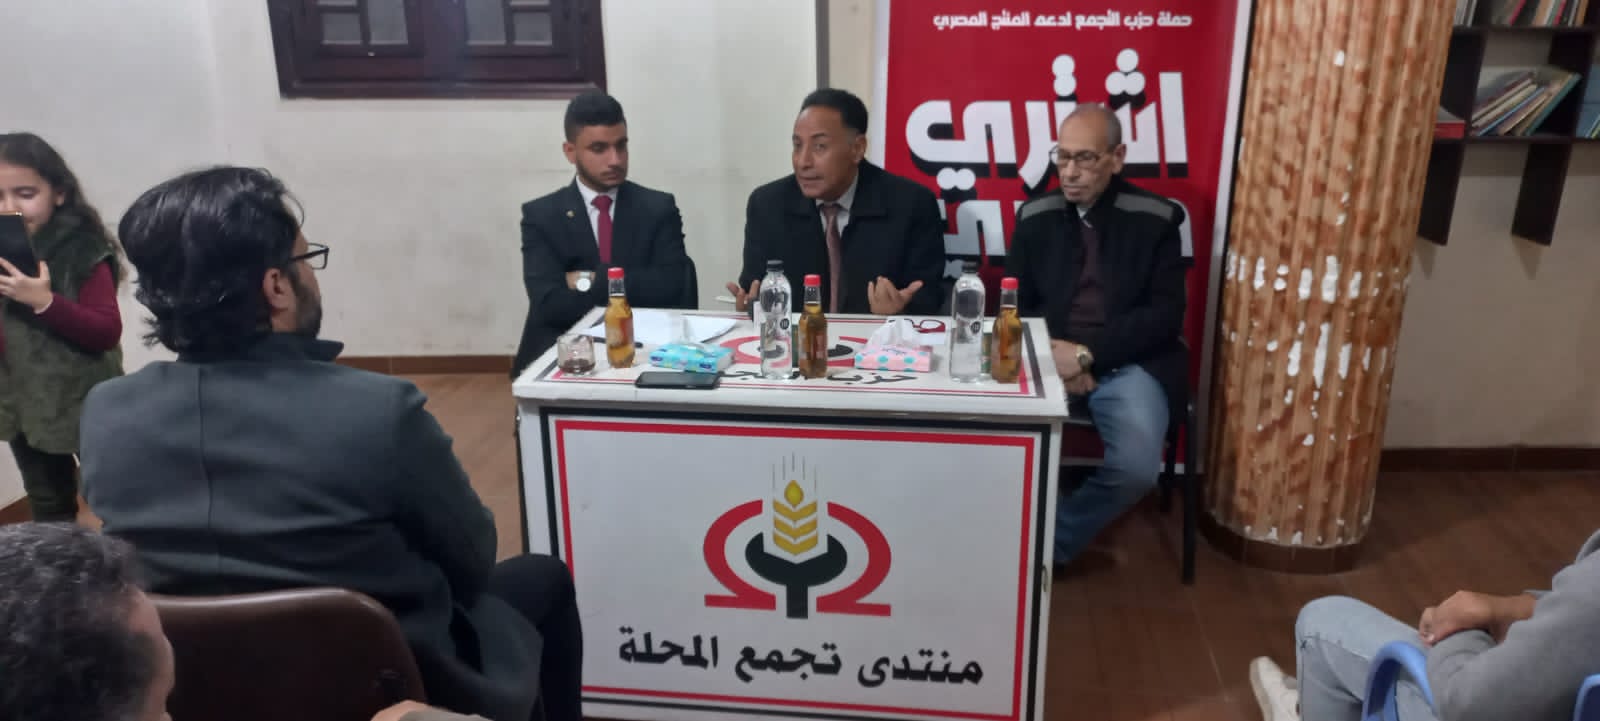 اتحاد الشباب التقدمي بالغربية ينظم ندوة التقويم المصري (2)